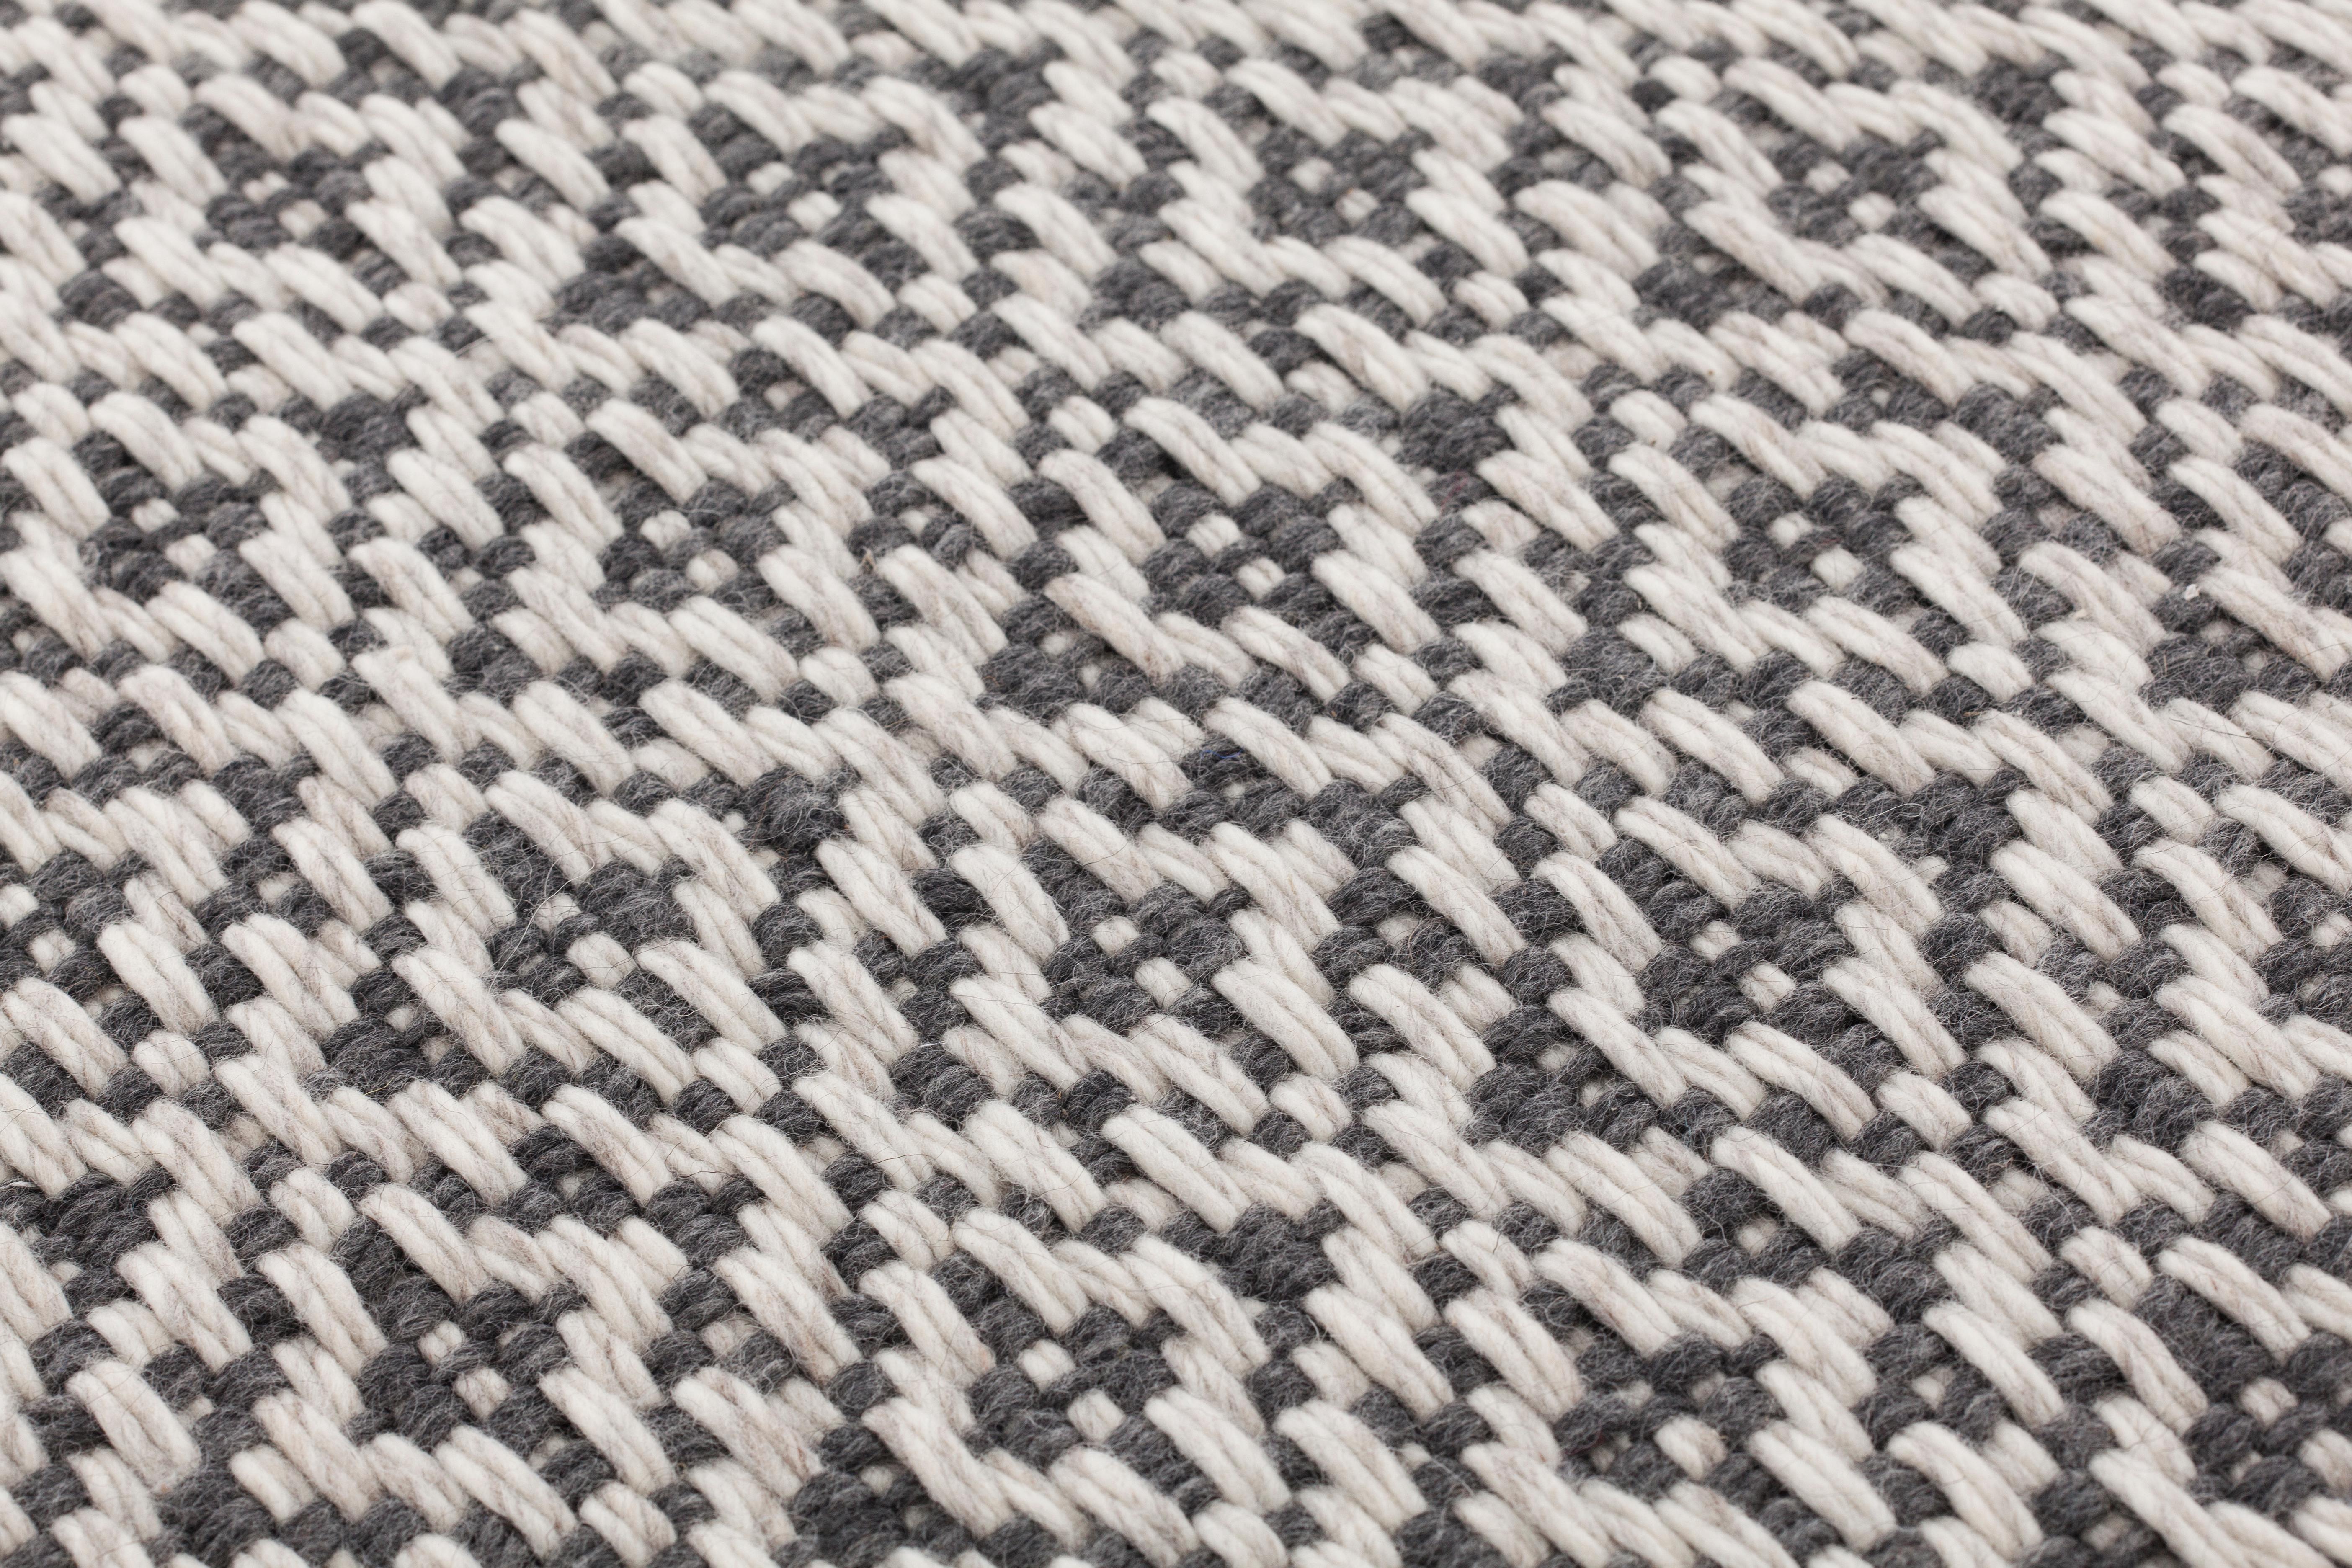 BARI ist Teil der Teppichkollektion WOOL von GAN, der Innenraummarke von GANDIABLASCO, einer Kollektion, die unsere Sinne anspricht: den Geruchssinn, den Tastsinn und den Sehsinn. Ein Fest der Sinne für all das, was von einer Generation zur nächsten